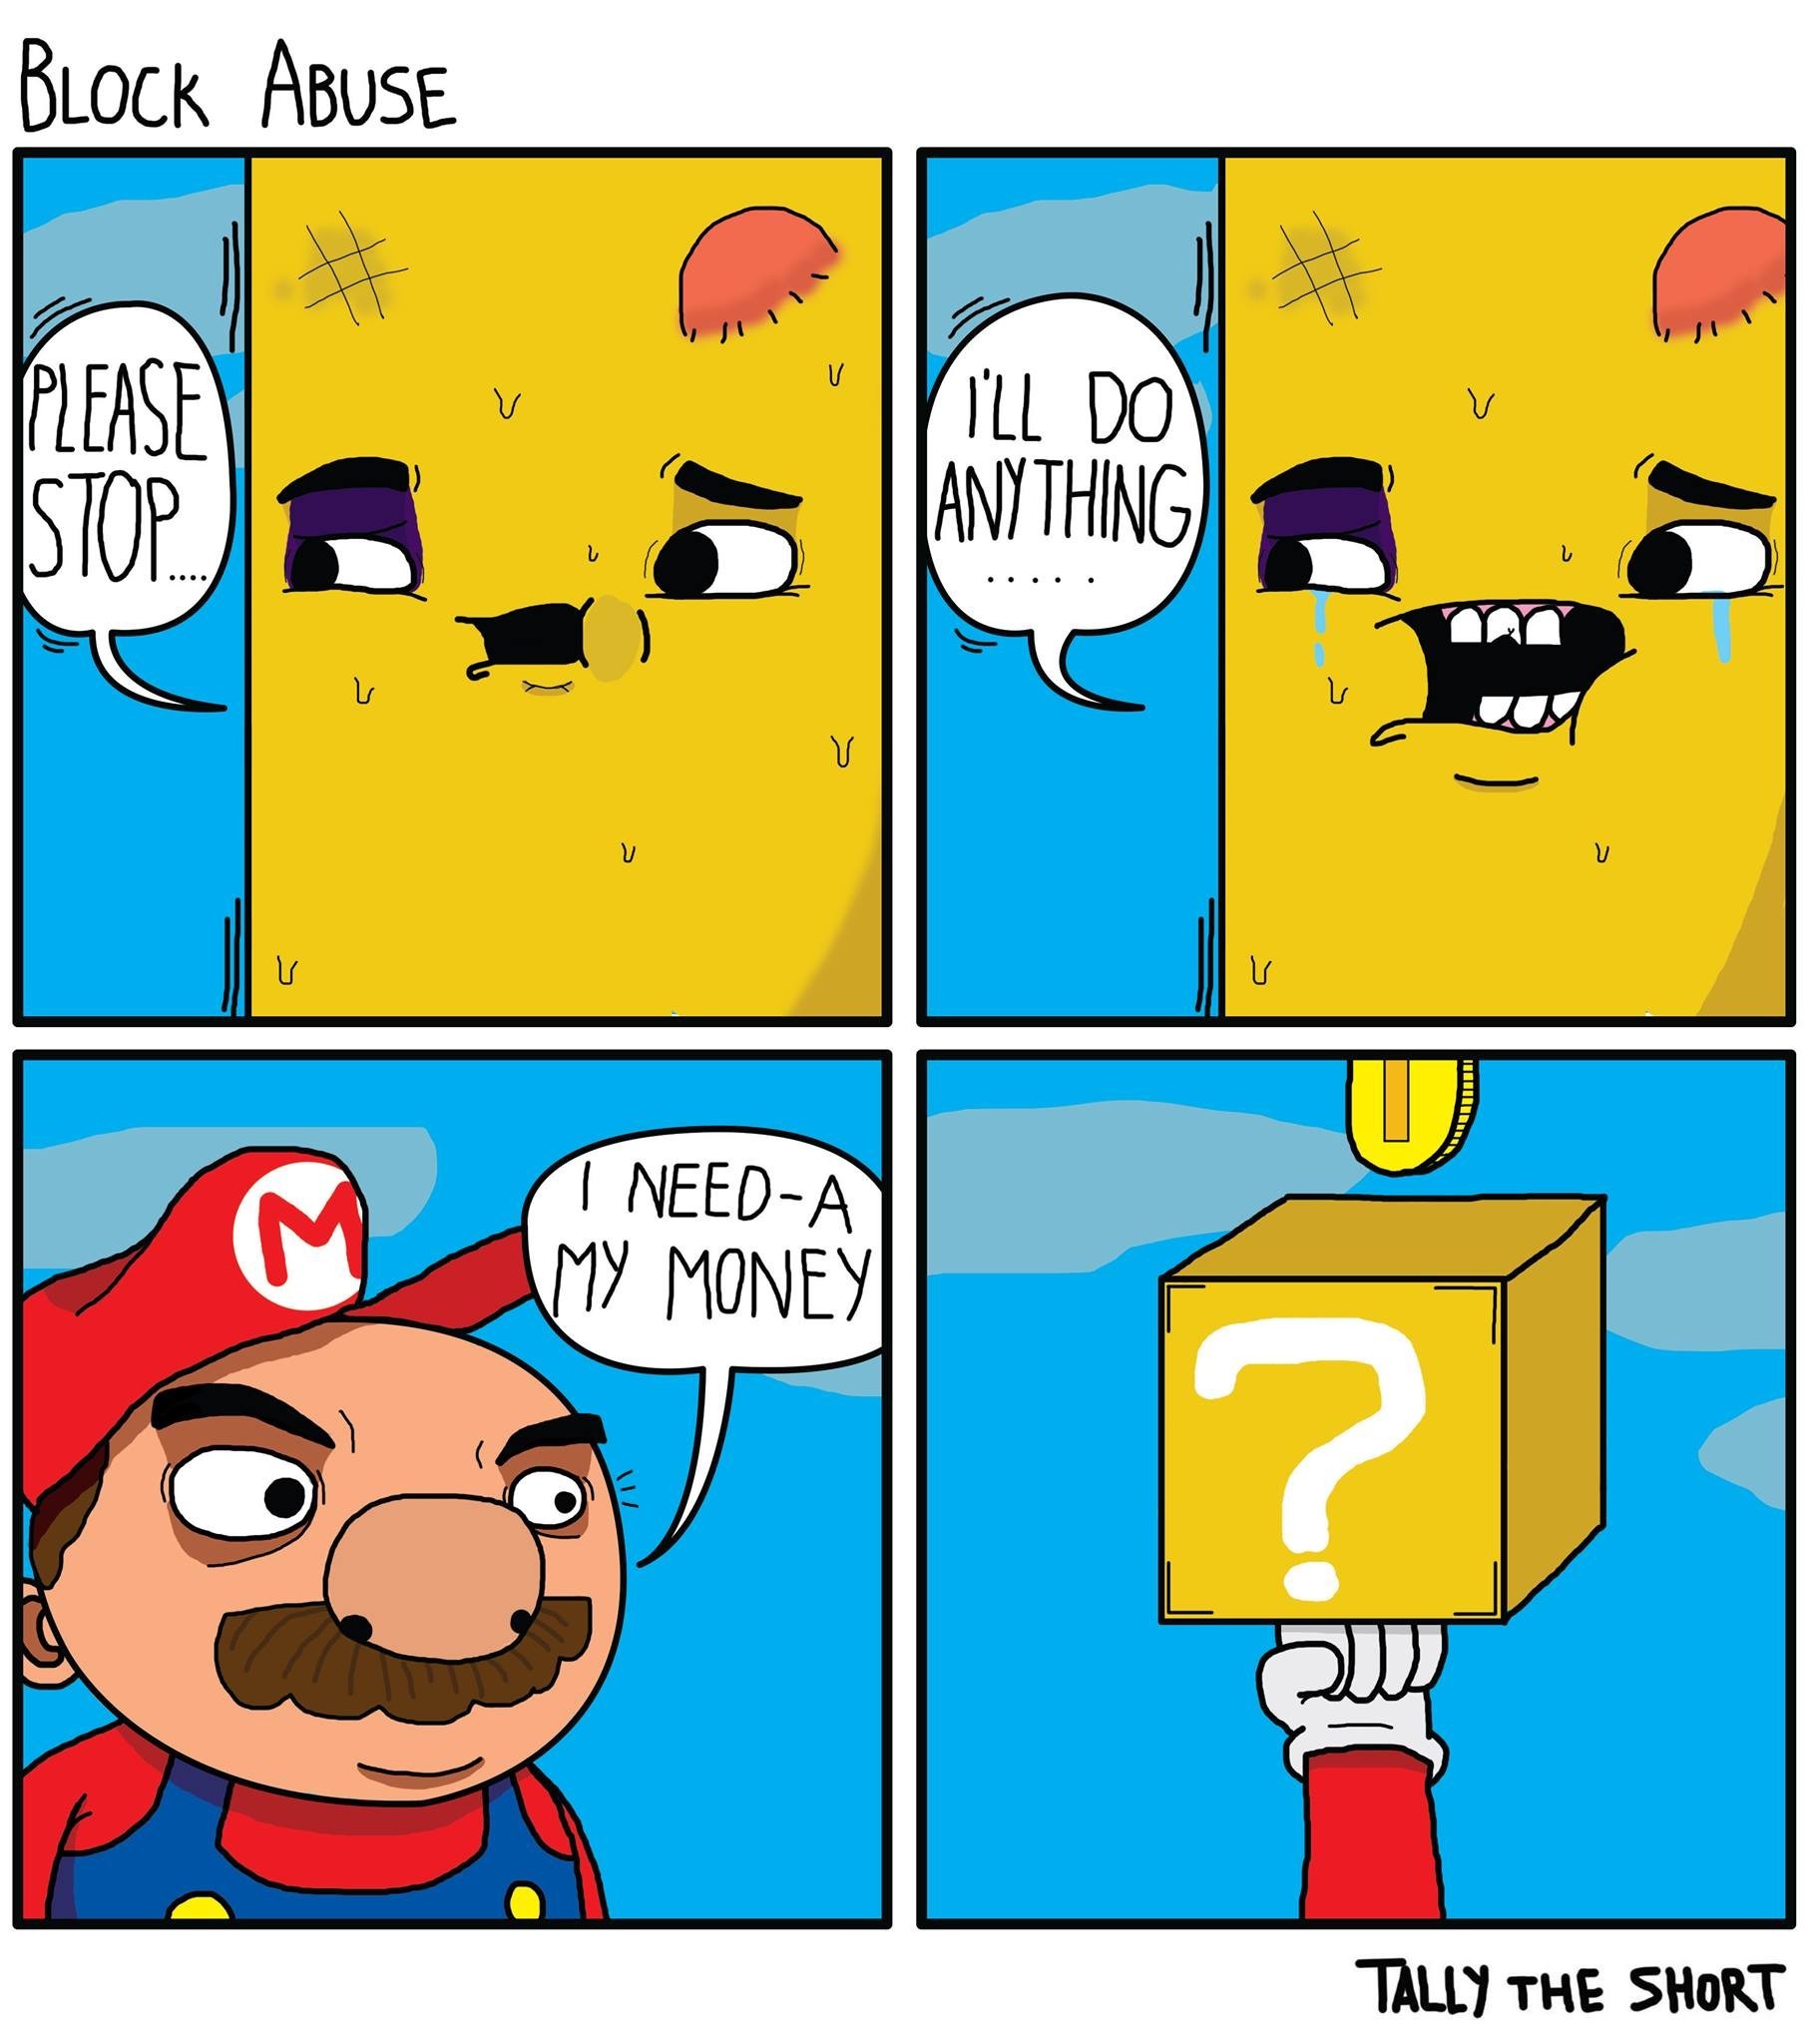 Offensive Mario Memes